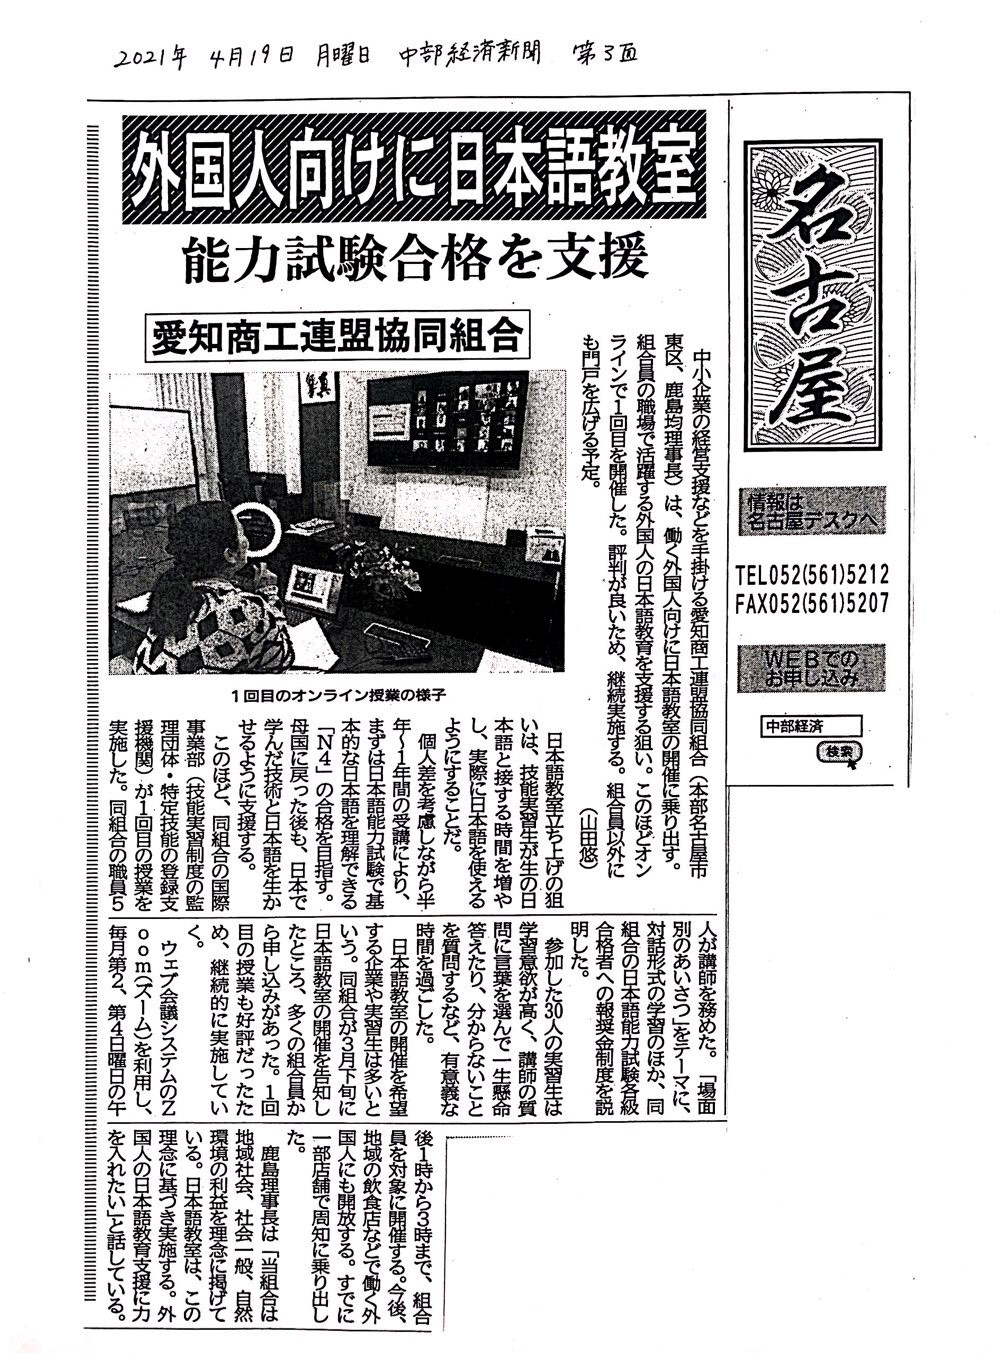 中部経済新聞に掲載されました「働く外国人のための日本語オンライン教室」